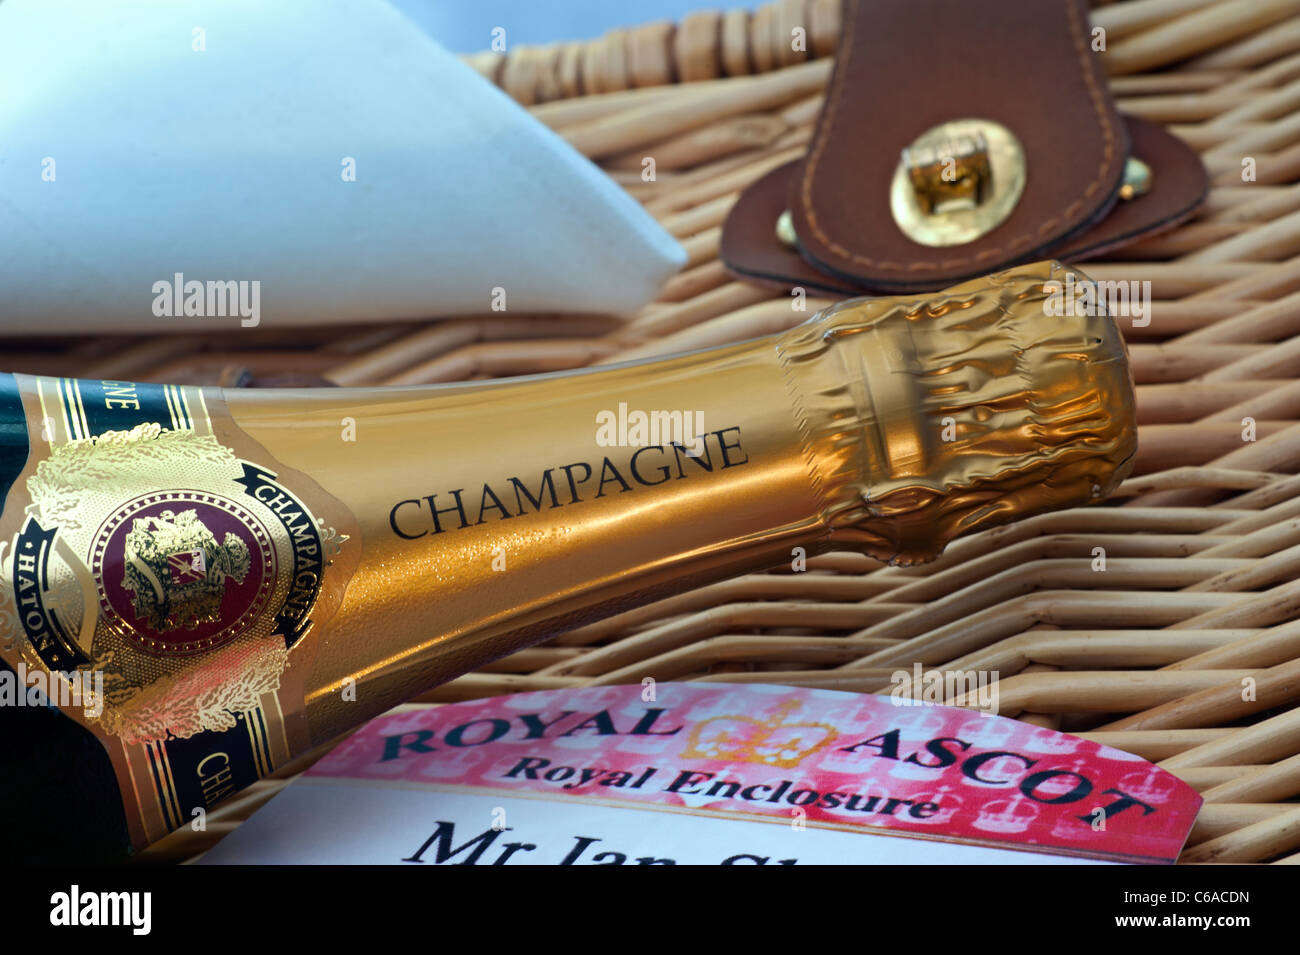 Pique-nique Royal Ascot bouteille de champagne et badge d'entrée sur un panier en osier à l'extérieur de luxe Royal Enclosure Ascot après l'événement de pique-nique de la course Banque D'Images